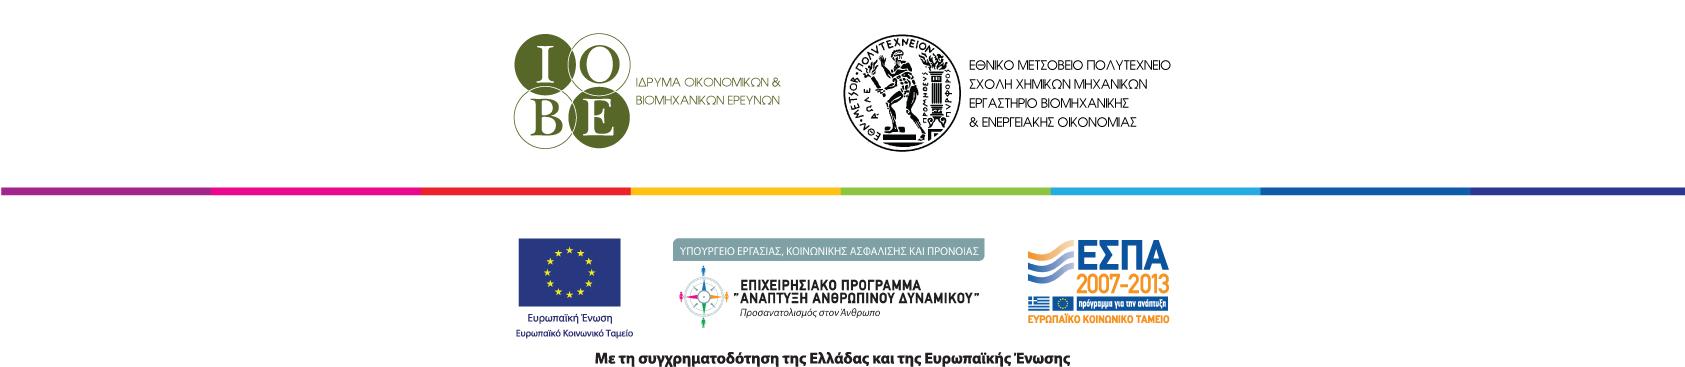 Τομζασ ΤΠΕ (Τεχνολογίεσ Πληροφορικήσ και Επικοινωνιών) Τυποποιημζνα ελληνικά